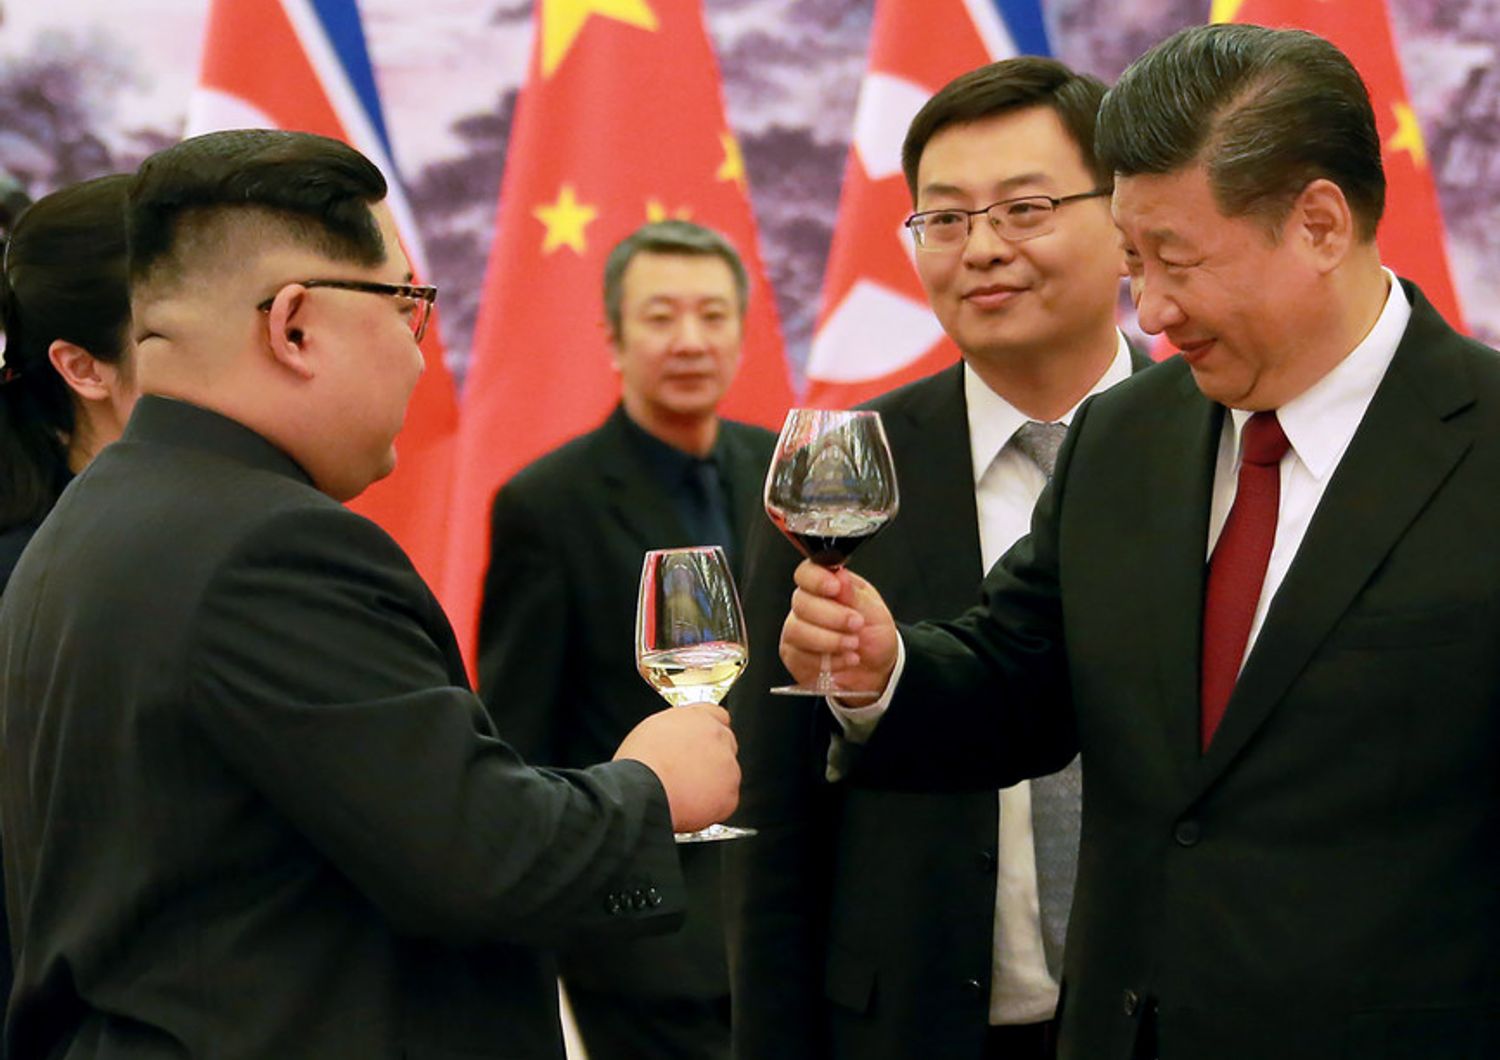 &nbsp;Il brindisi tra Kim e Xi